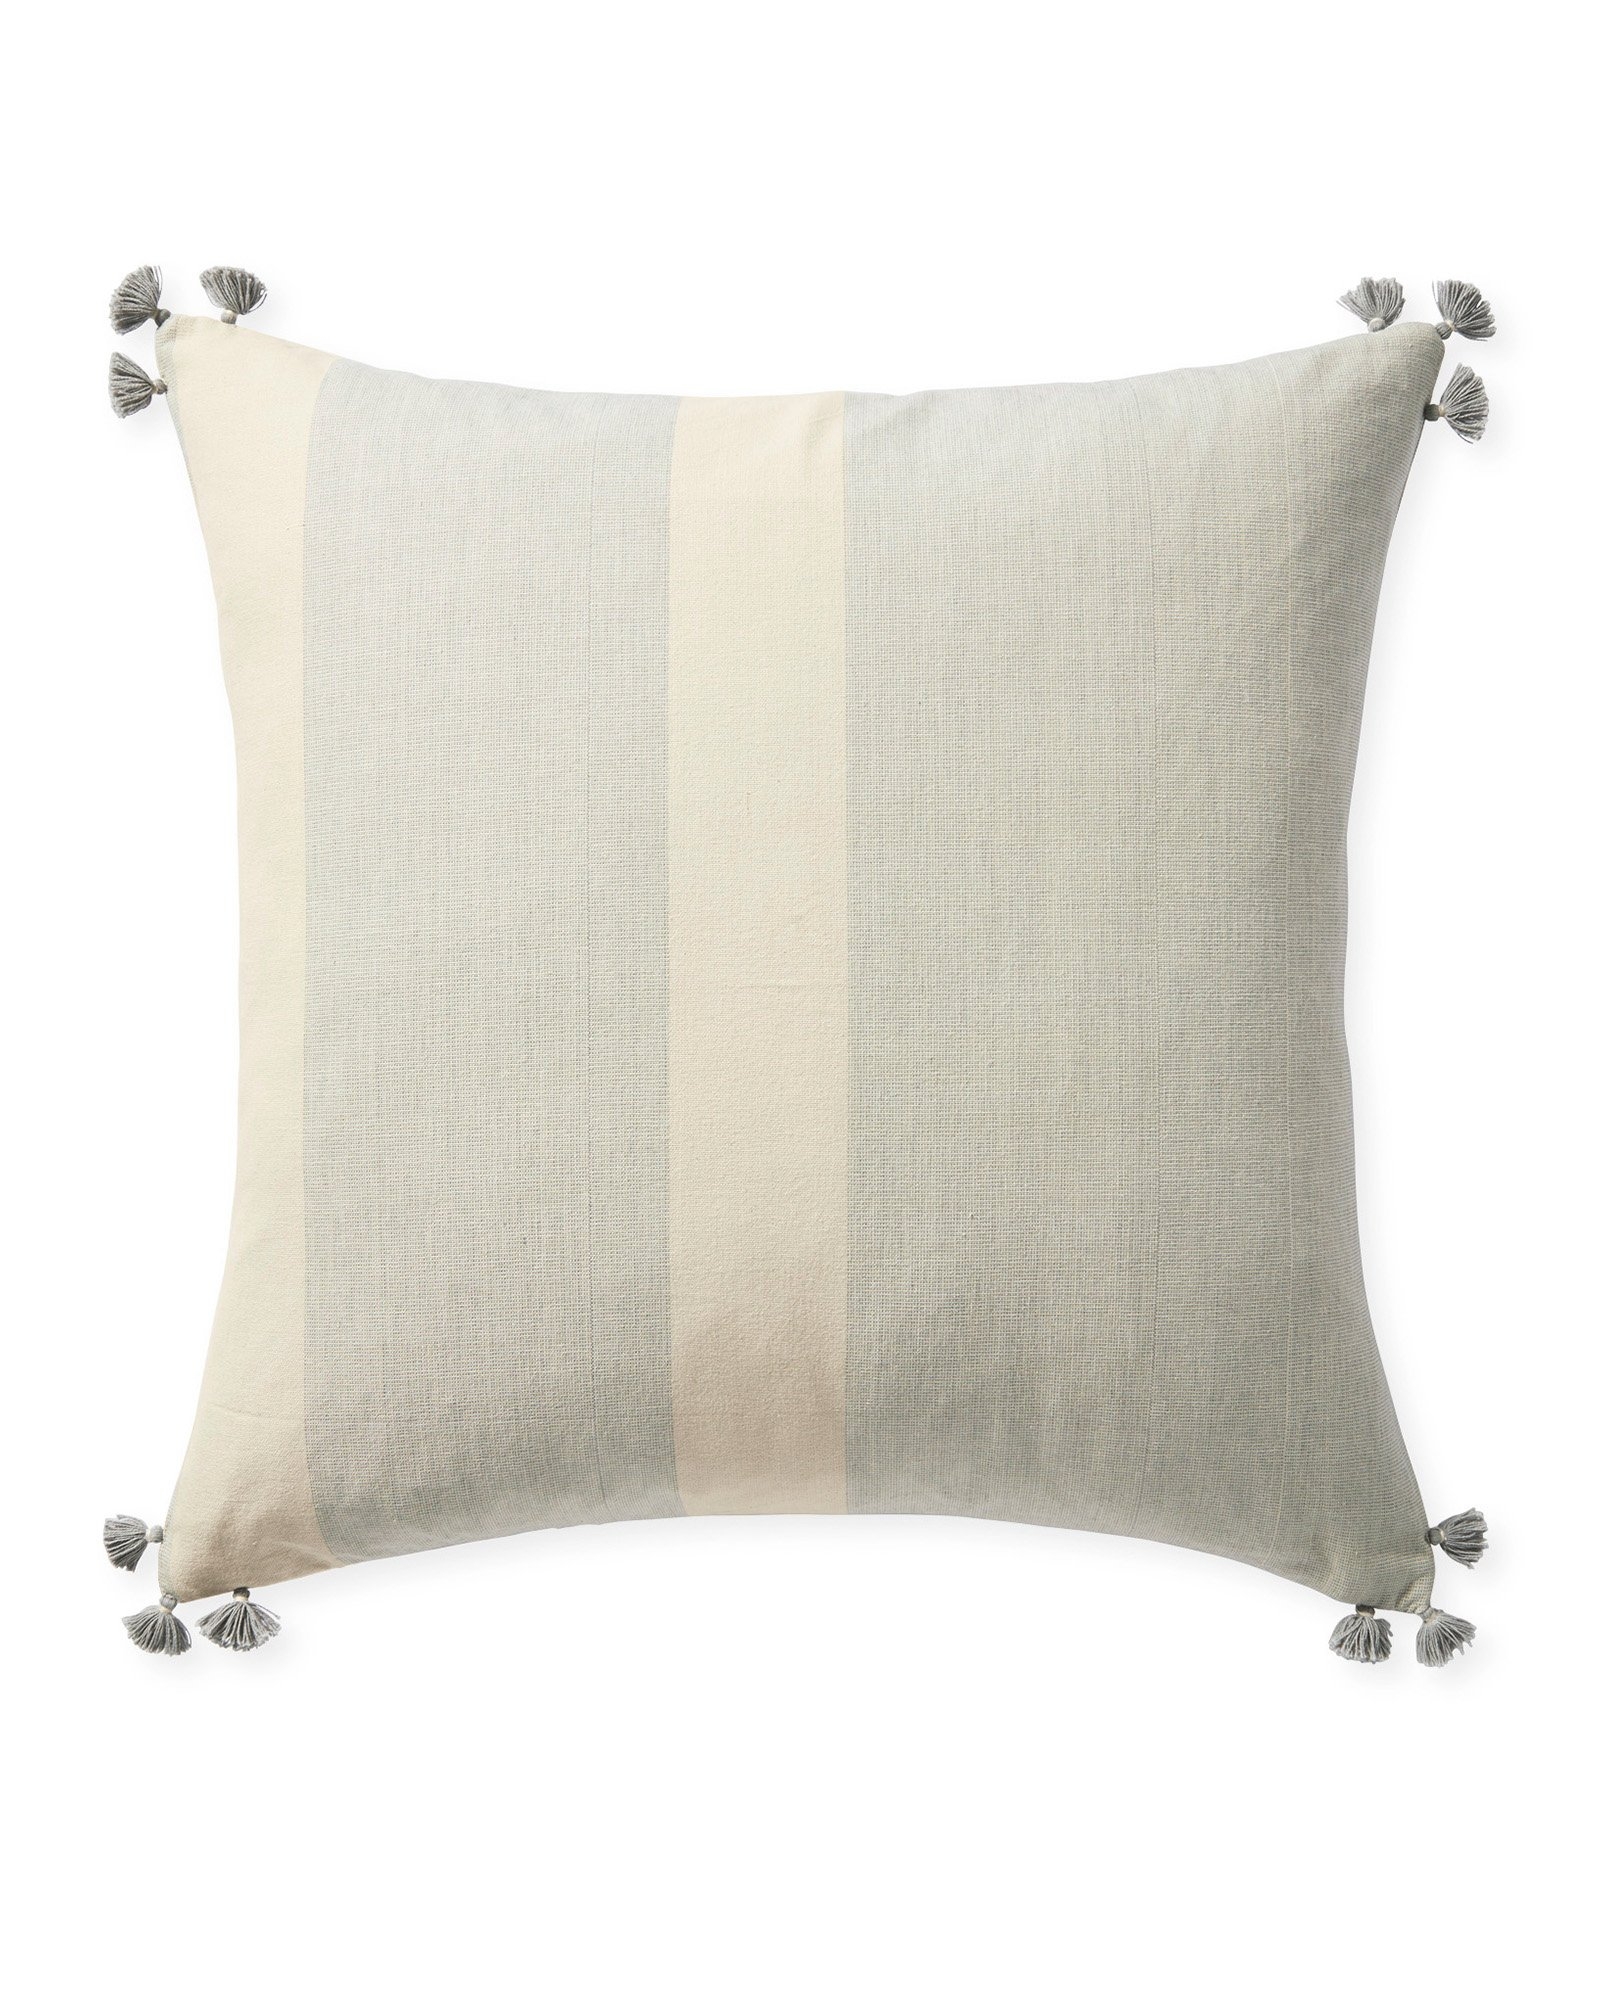 Bainbridge 24" SQ Pillow Cover - Fog - Insert sold separately - Image 0